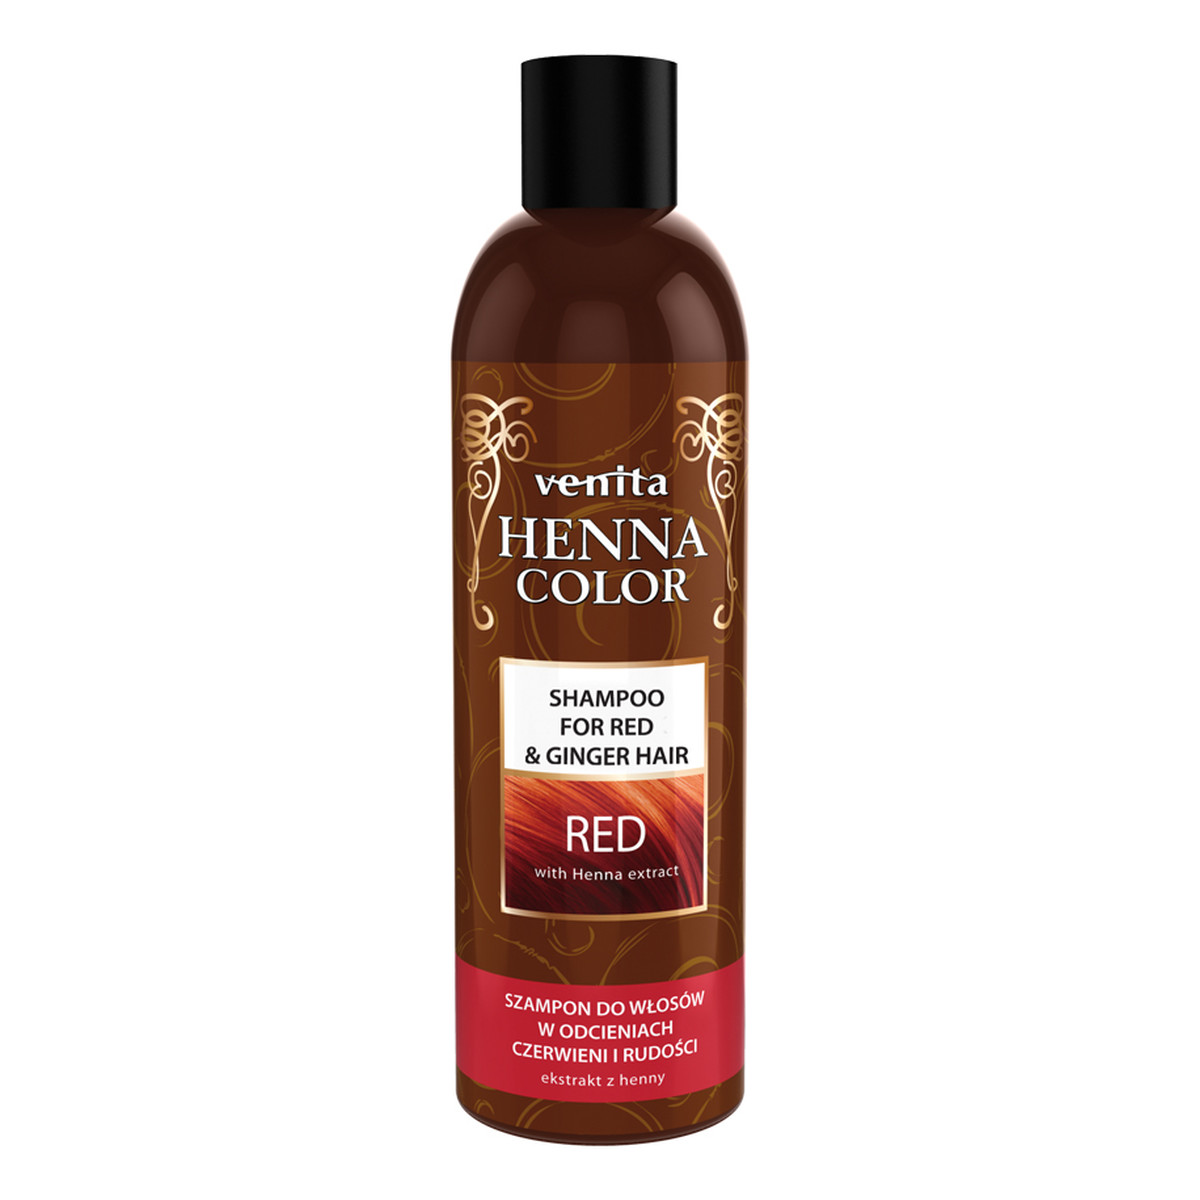 Venita Henna color red szampon ziołowy do włosów w odcieniach czerwieni i rudości 250ml